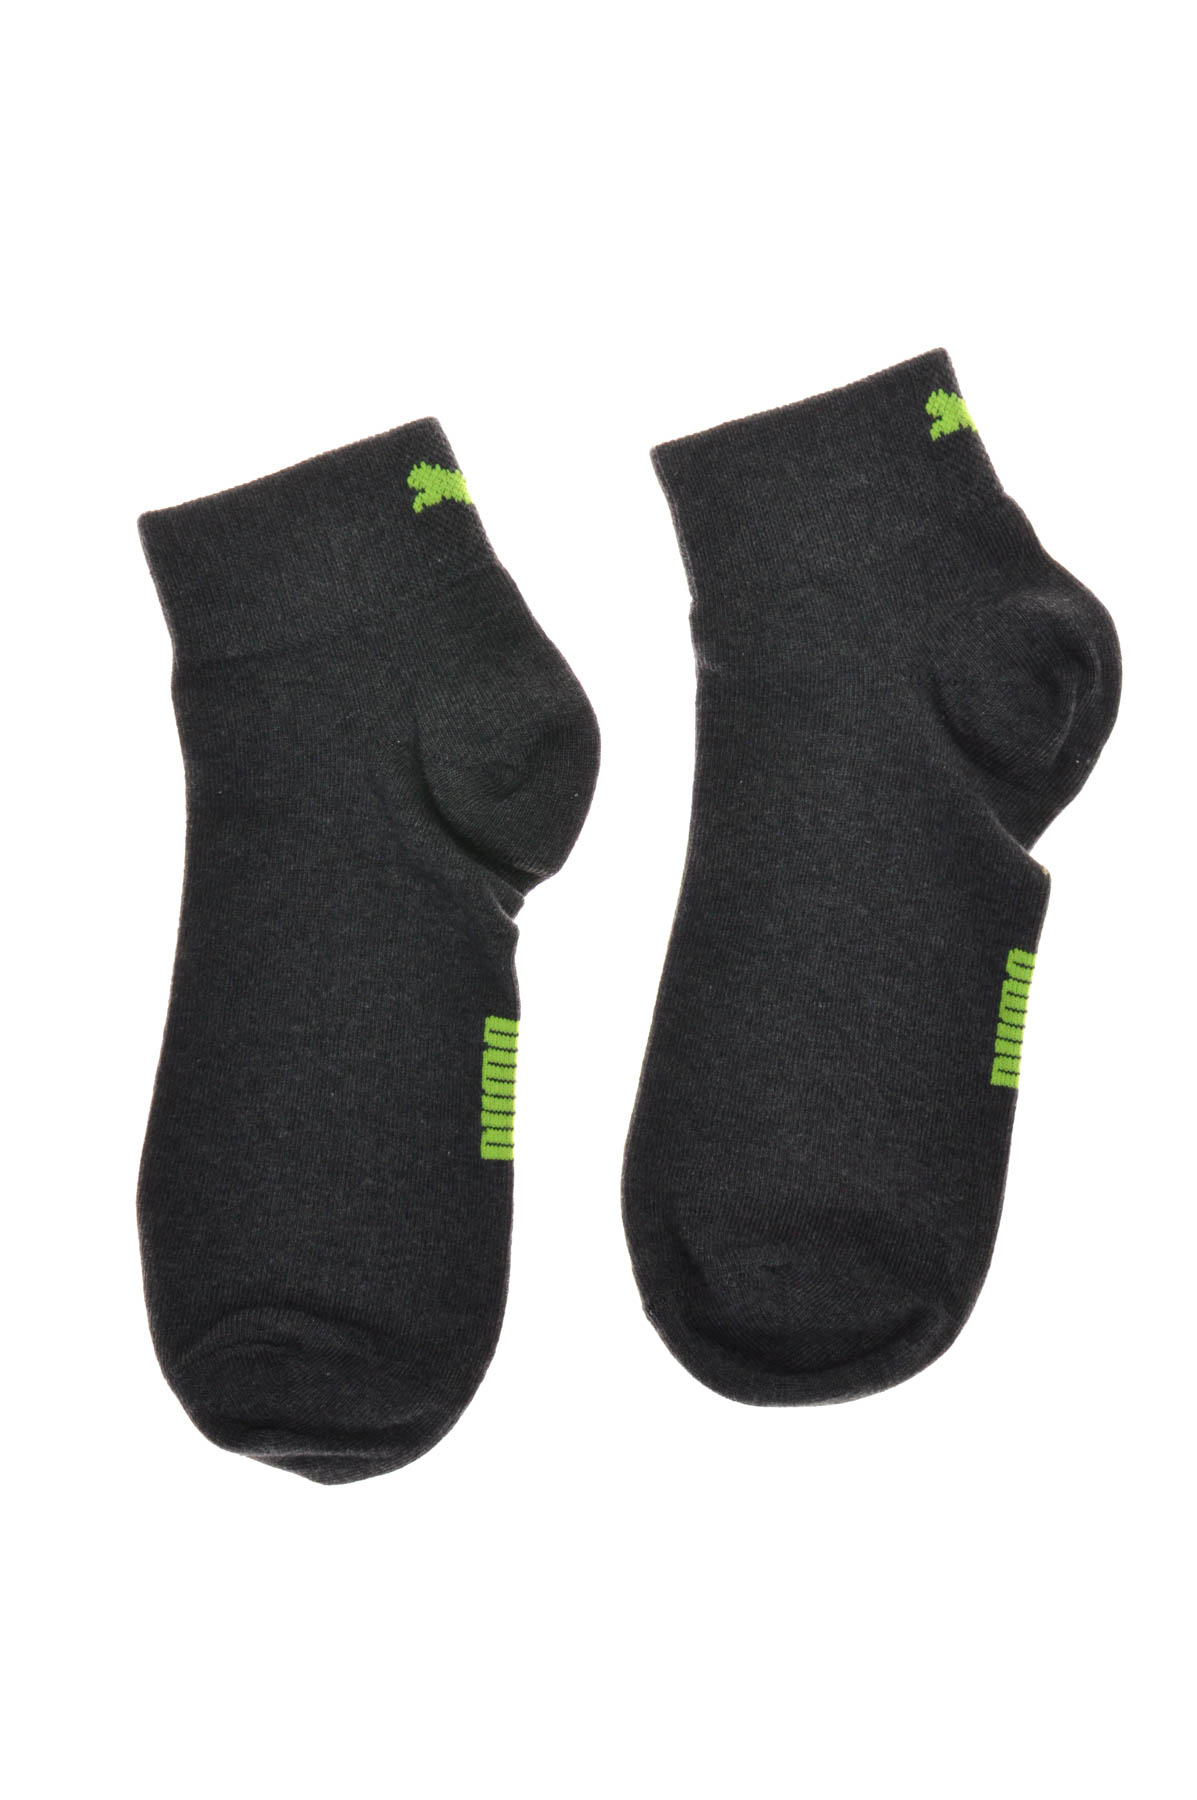 ανδρικές κάλτσες - 0